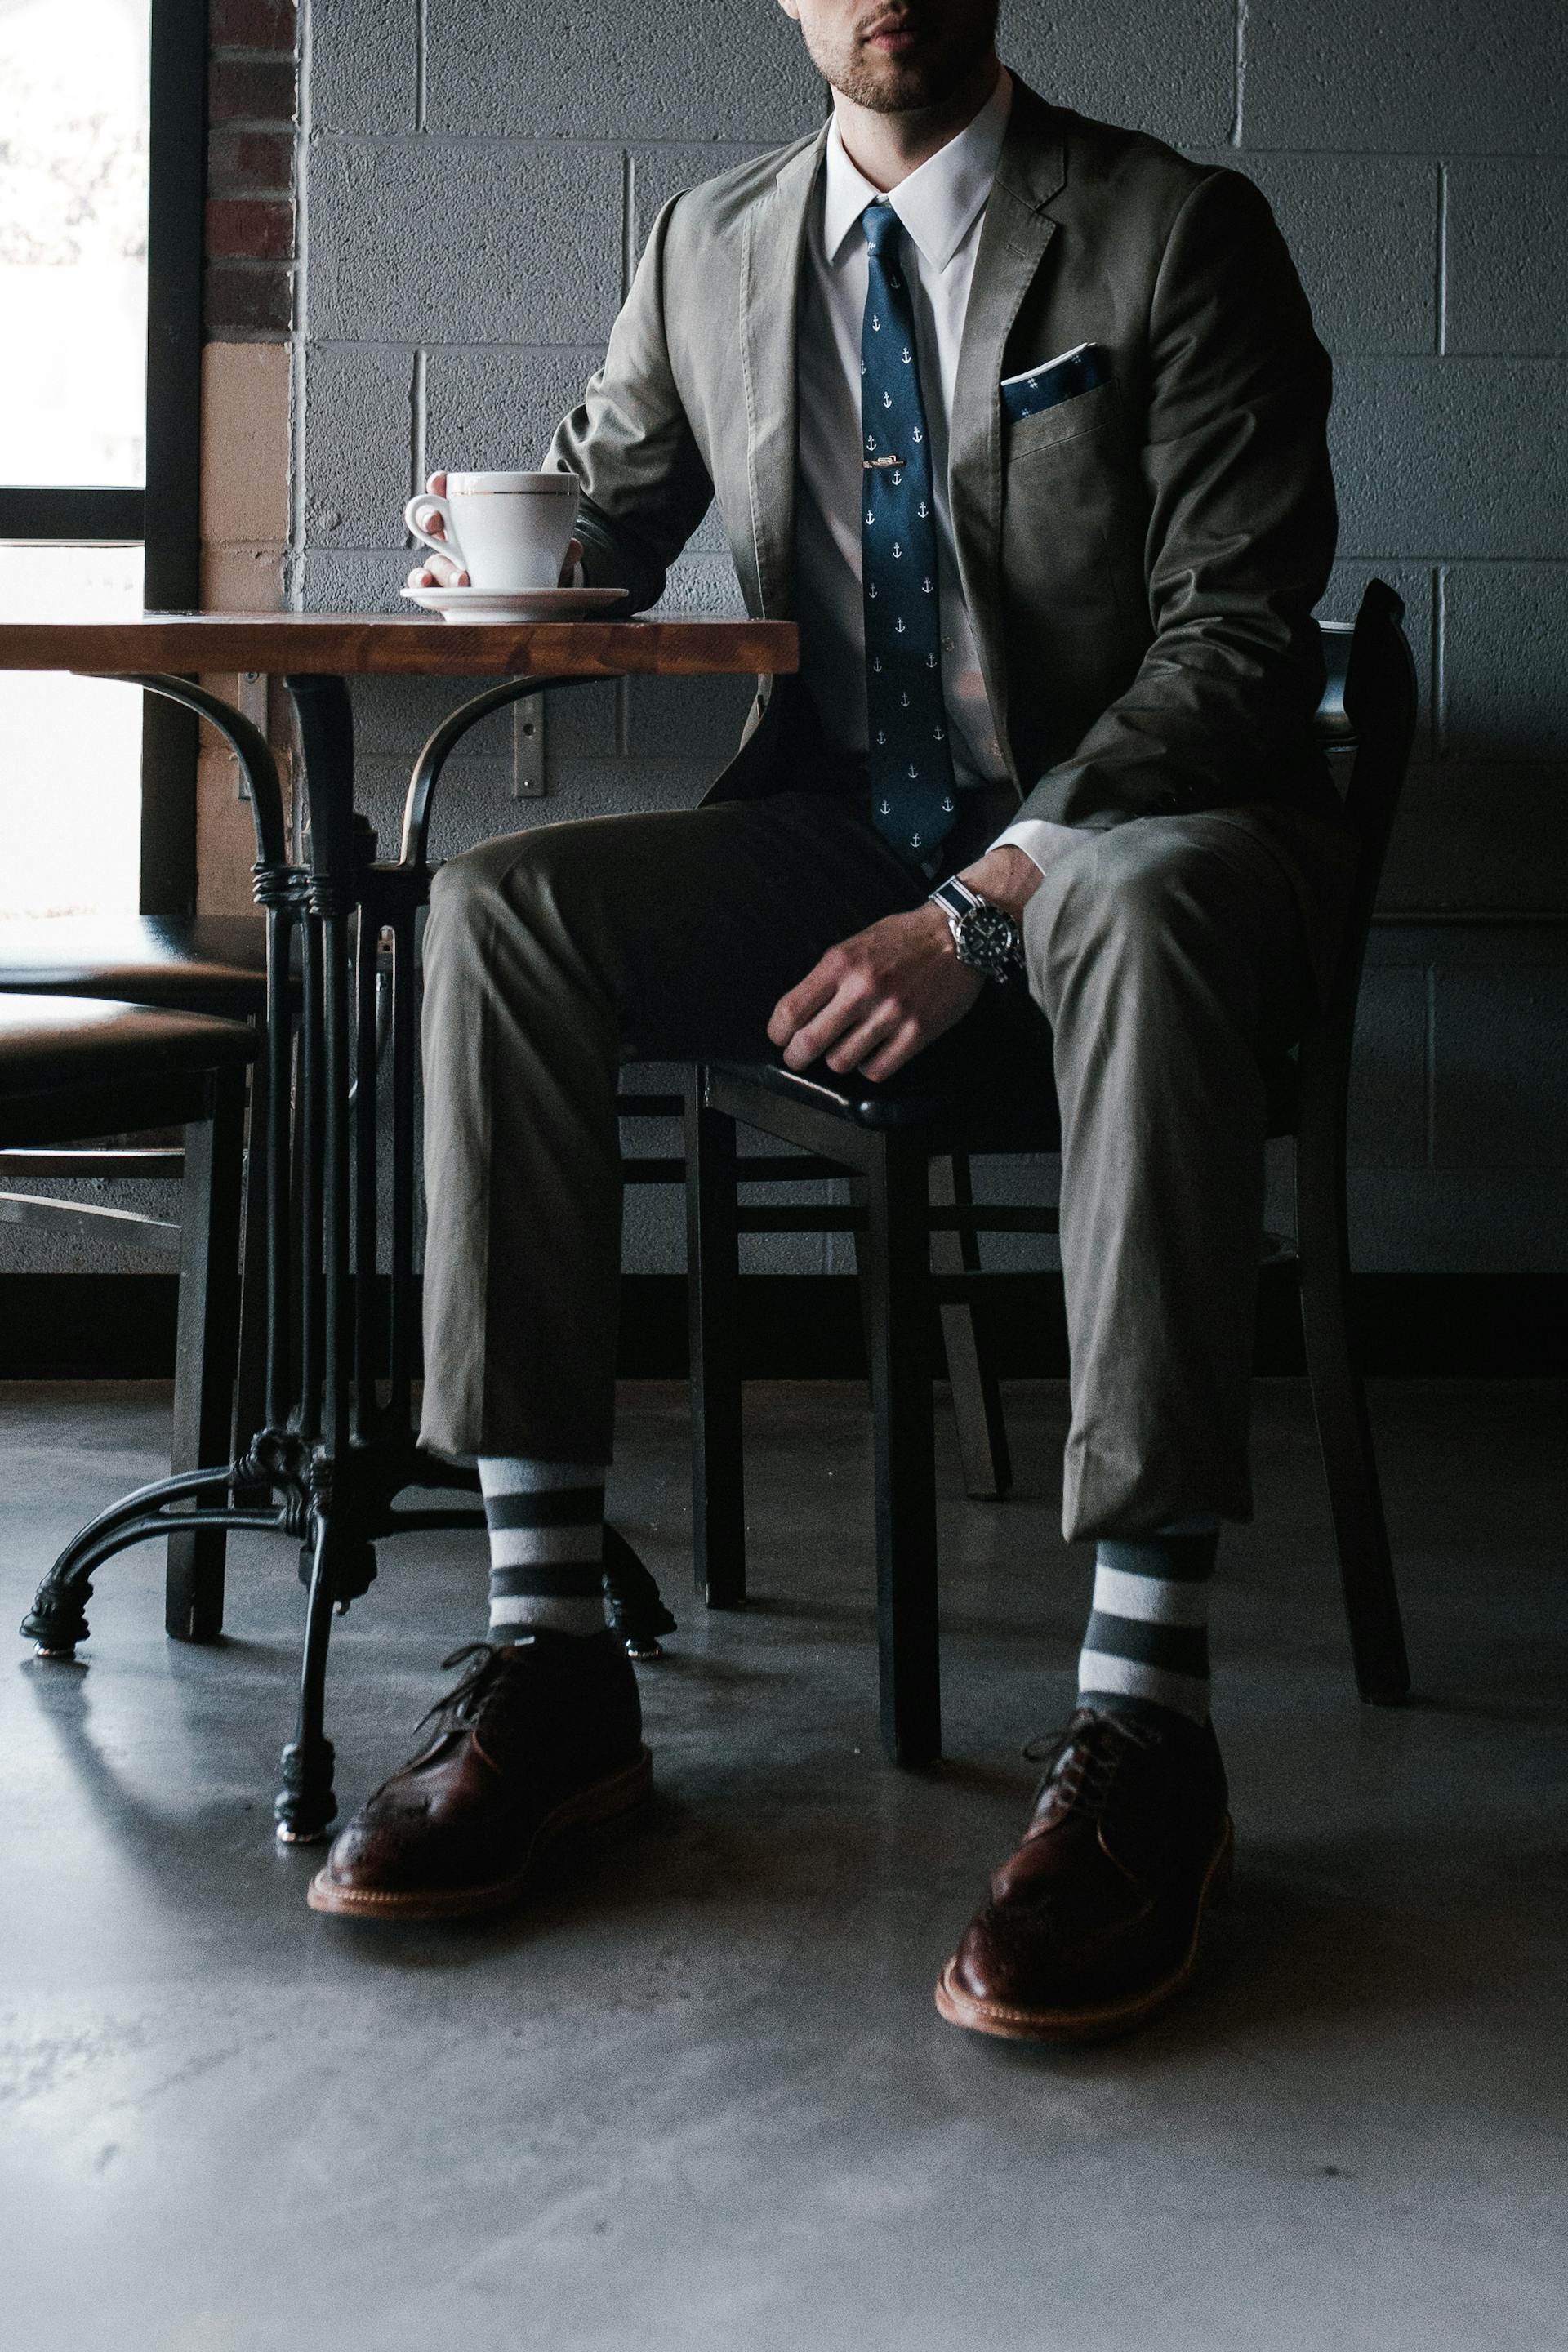 Ein Mann im Anzug sitzt an einem Tisch | Quelle: Pexels